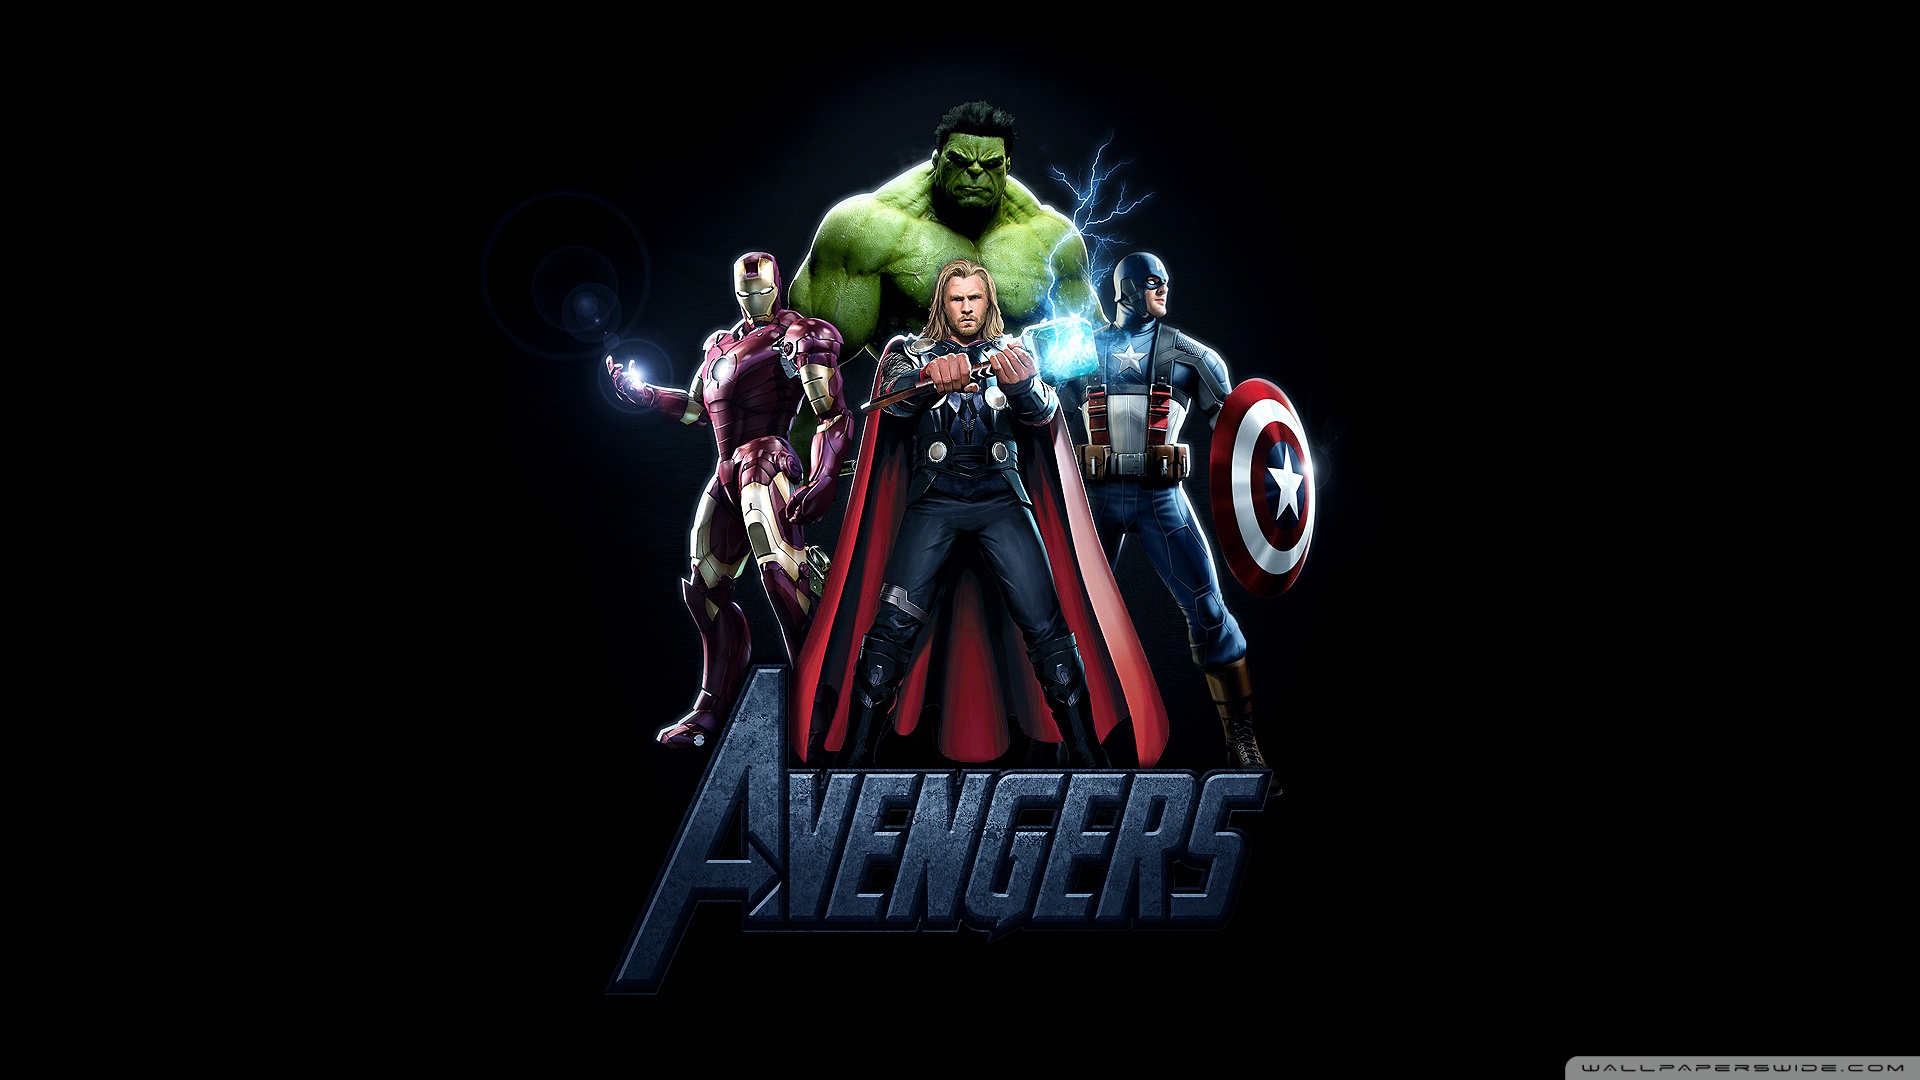 The Avengers Movie 2012 4K HD Desktop Wallpaper For 4K Ultra HD